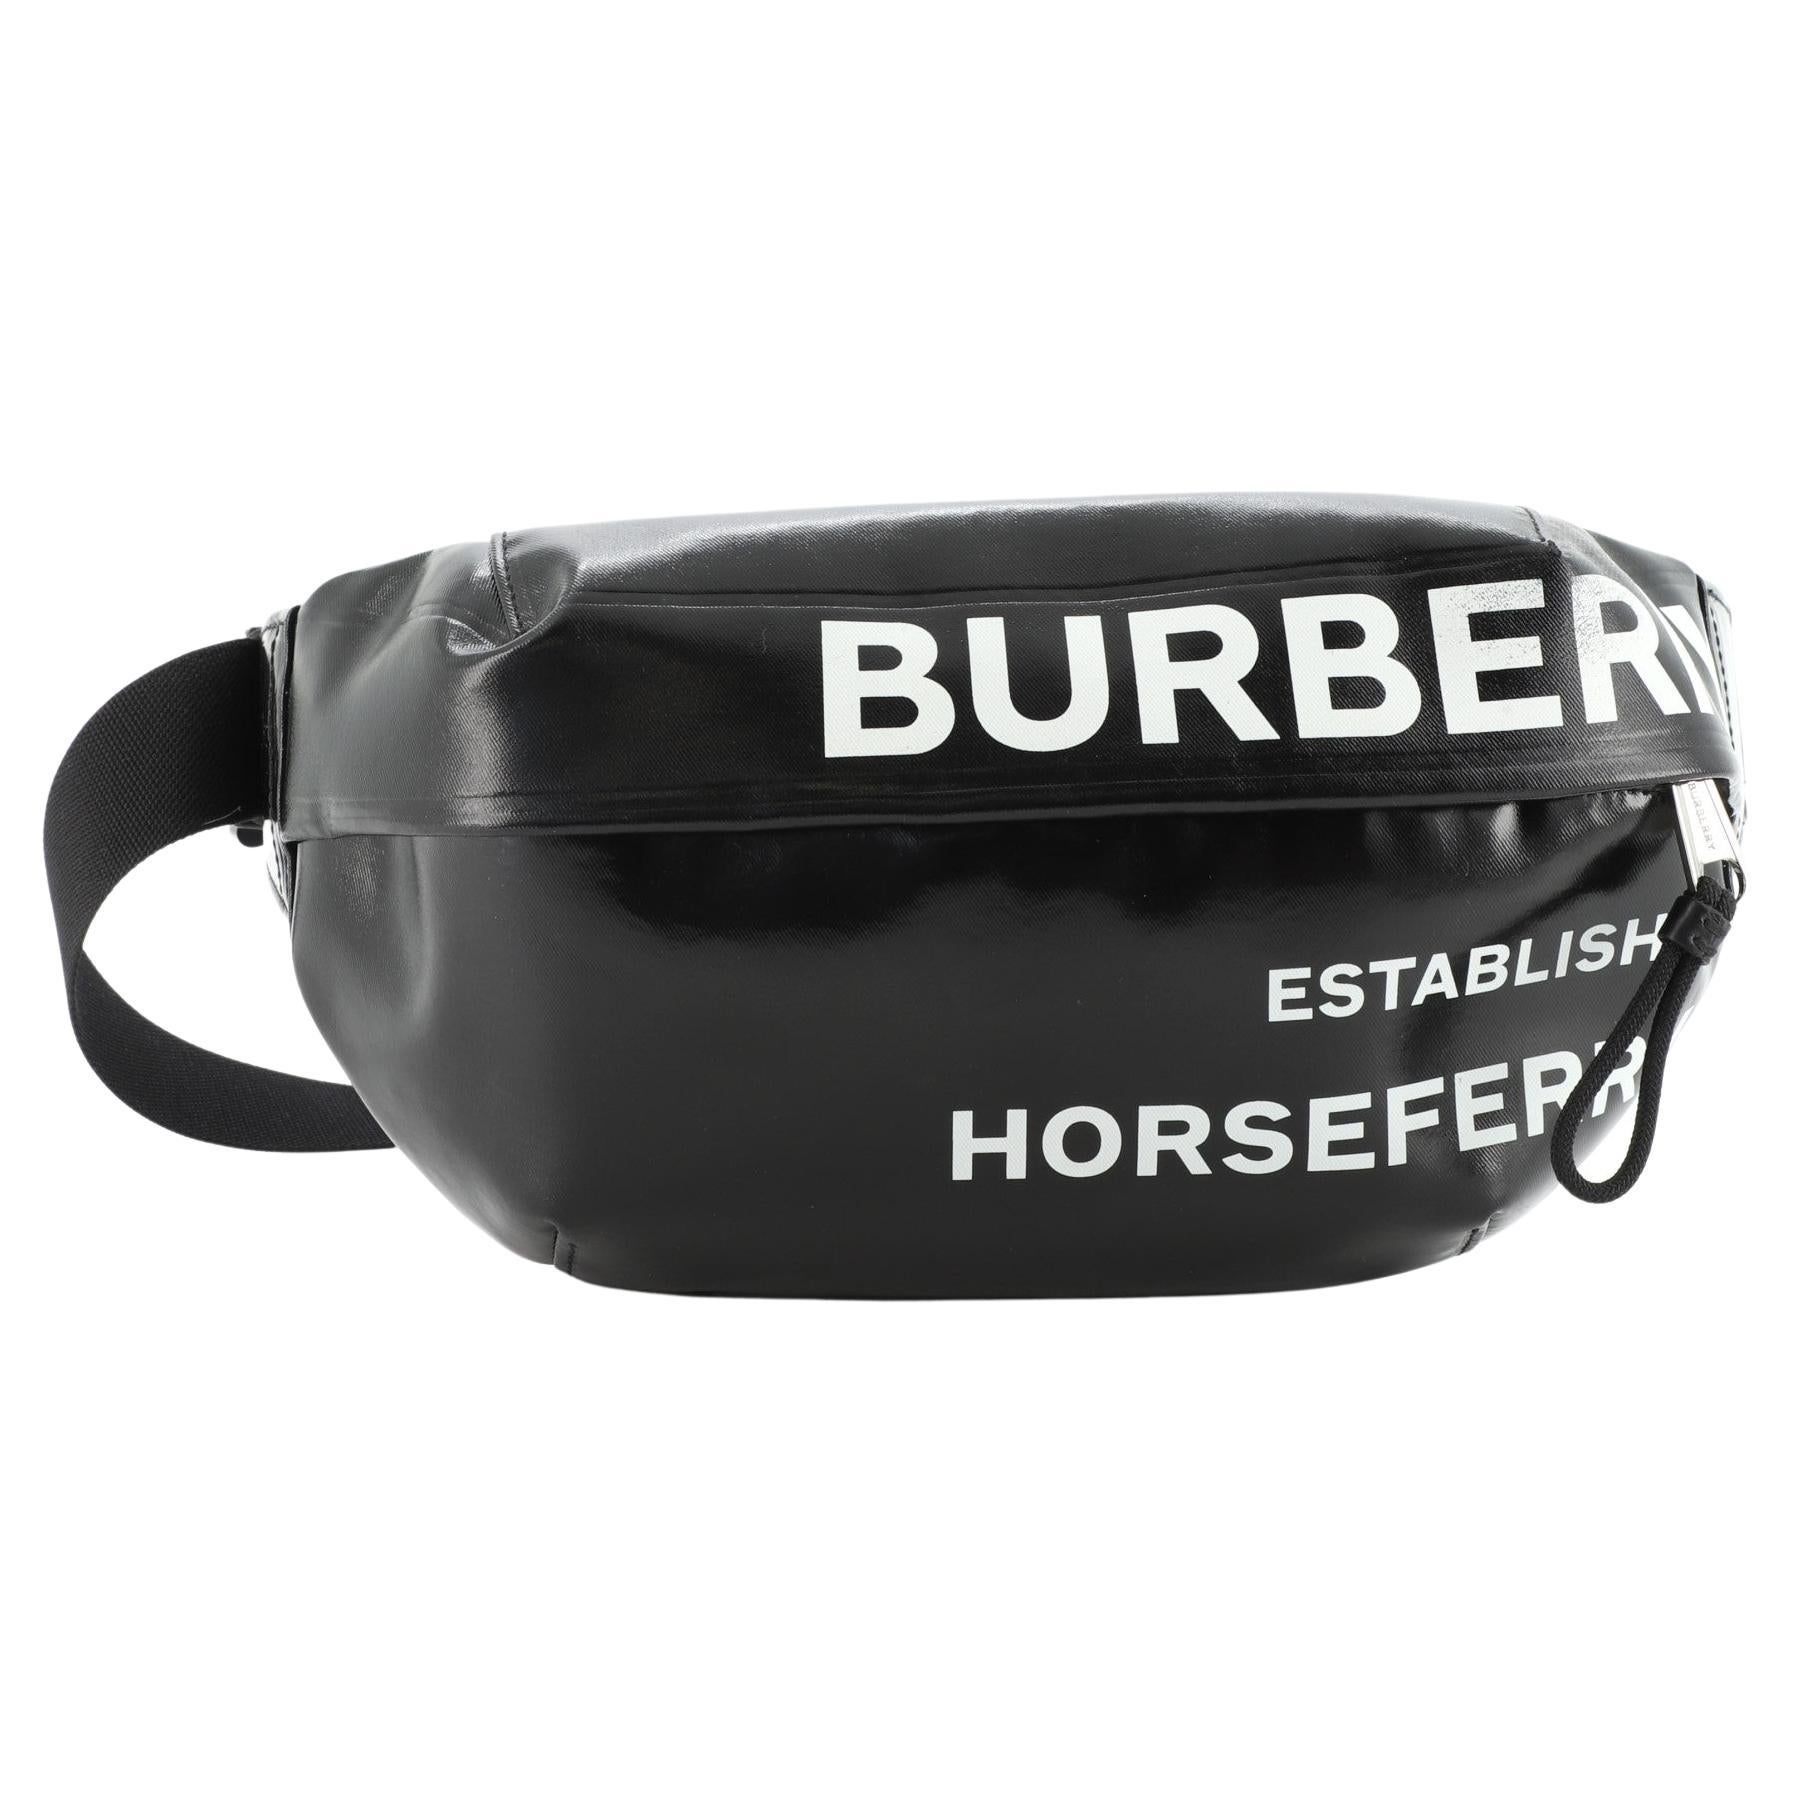 Burberry Bum Bag - 13 For Sale on 1stDibs